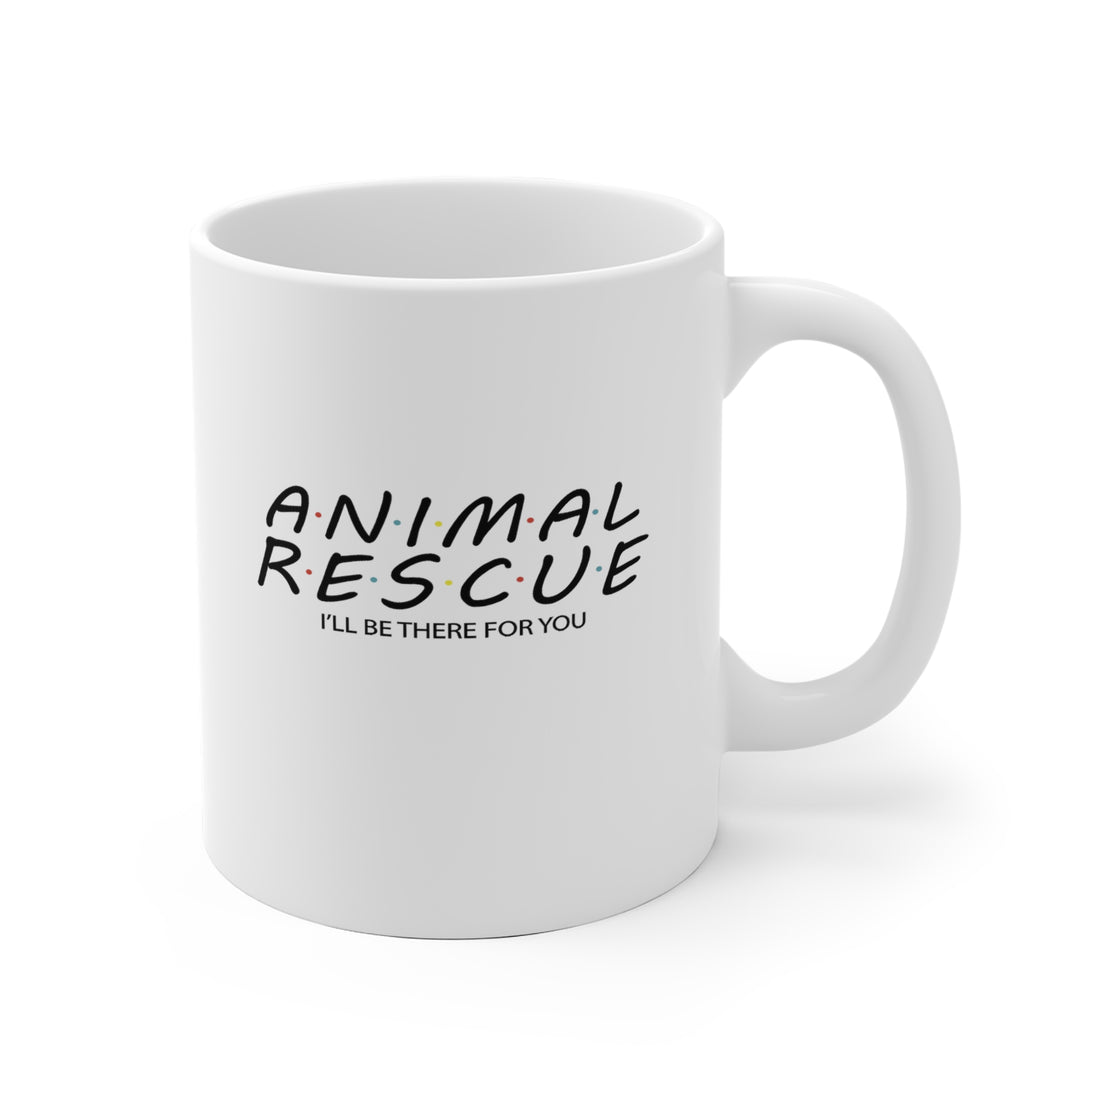 Animal Rescue - White Ceramic Mug 2 sizes Available